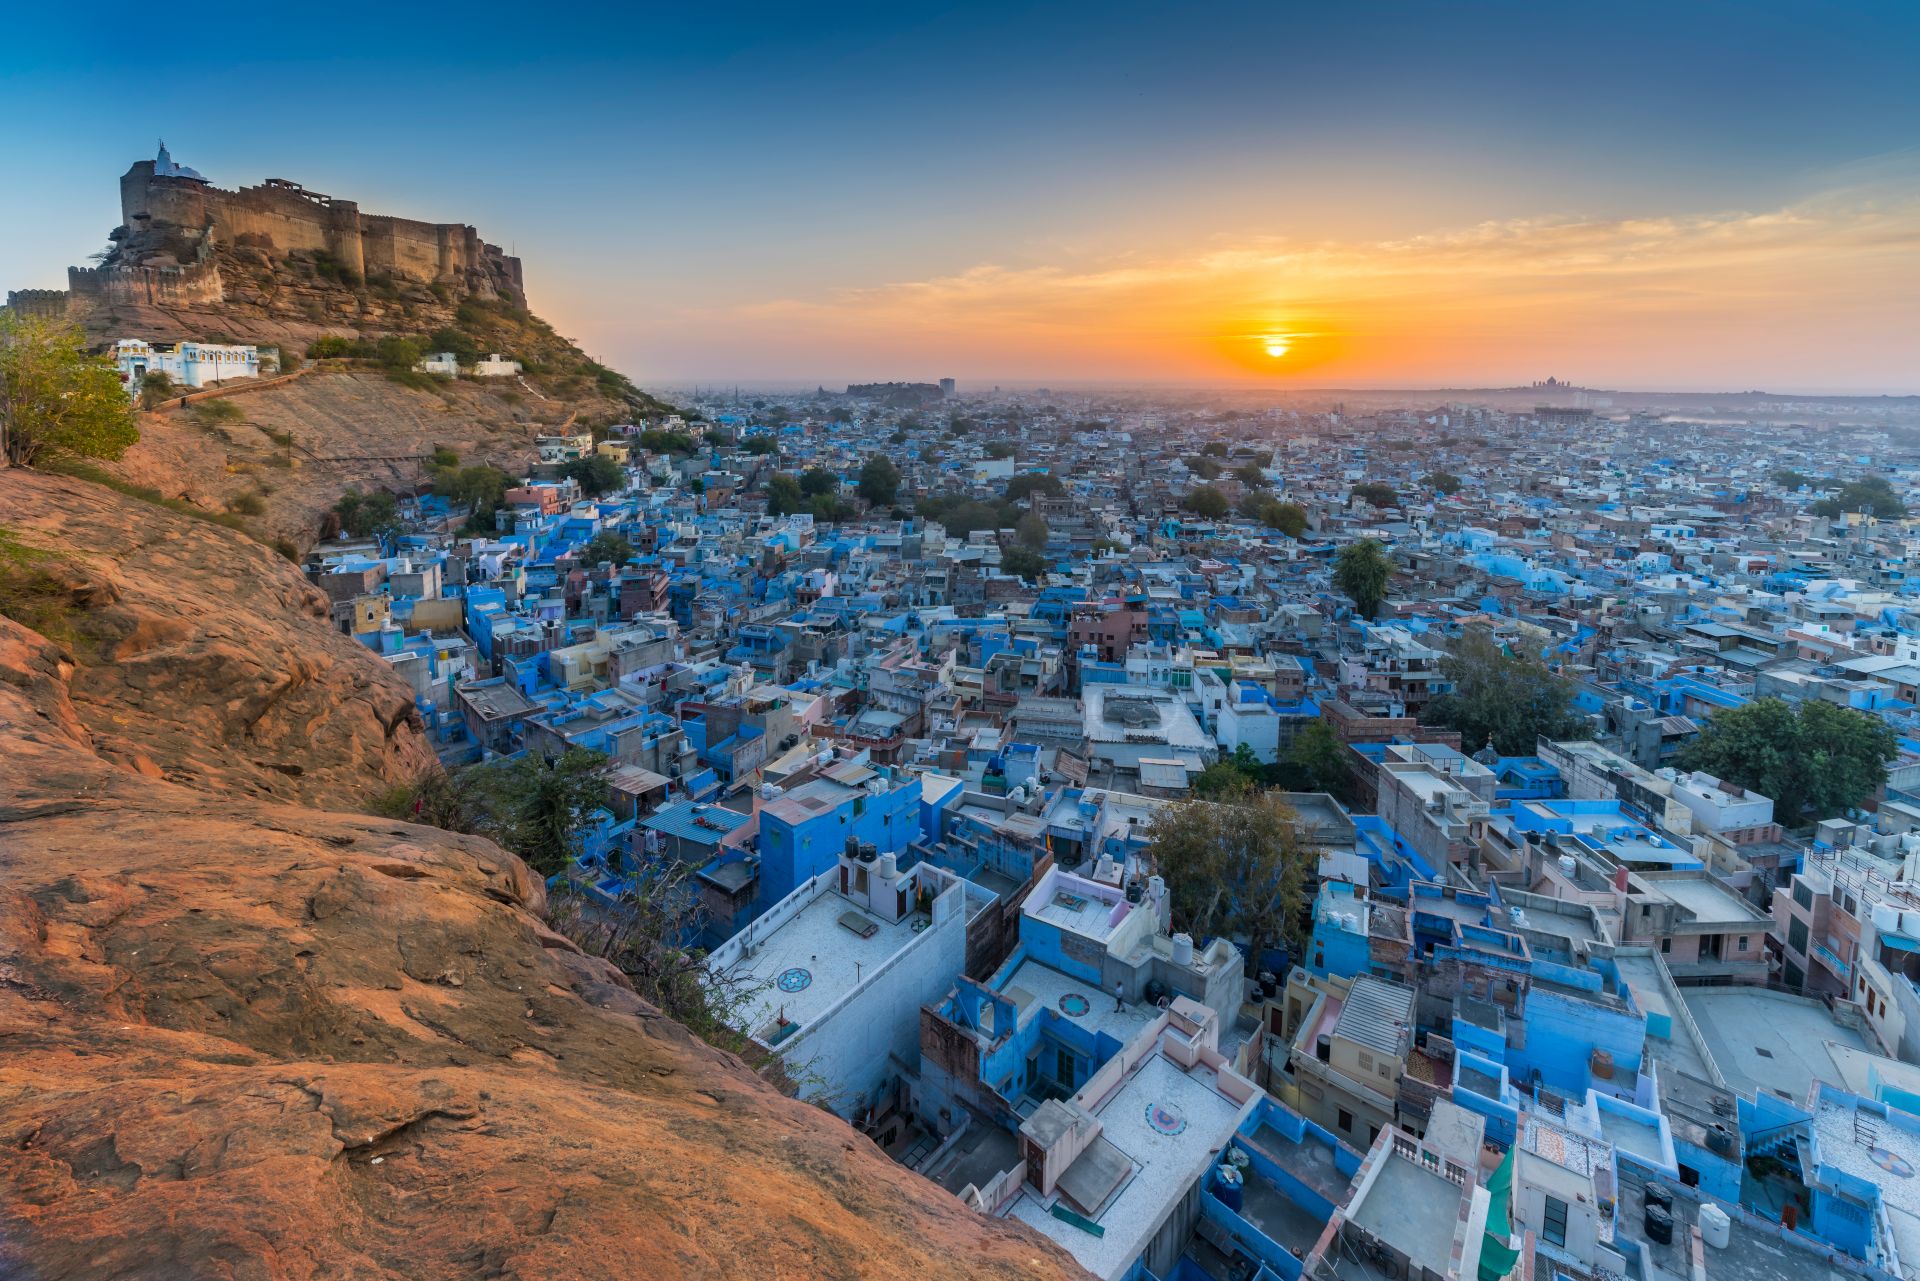 焦特布尔的蓝城和迈兰格尔堡。印度拉贾斯坦邦